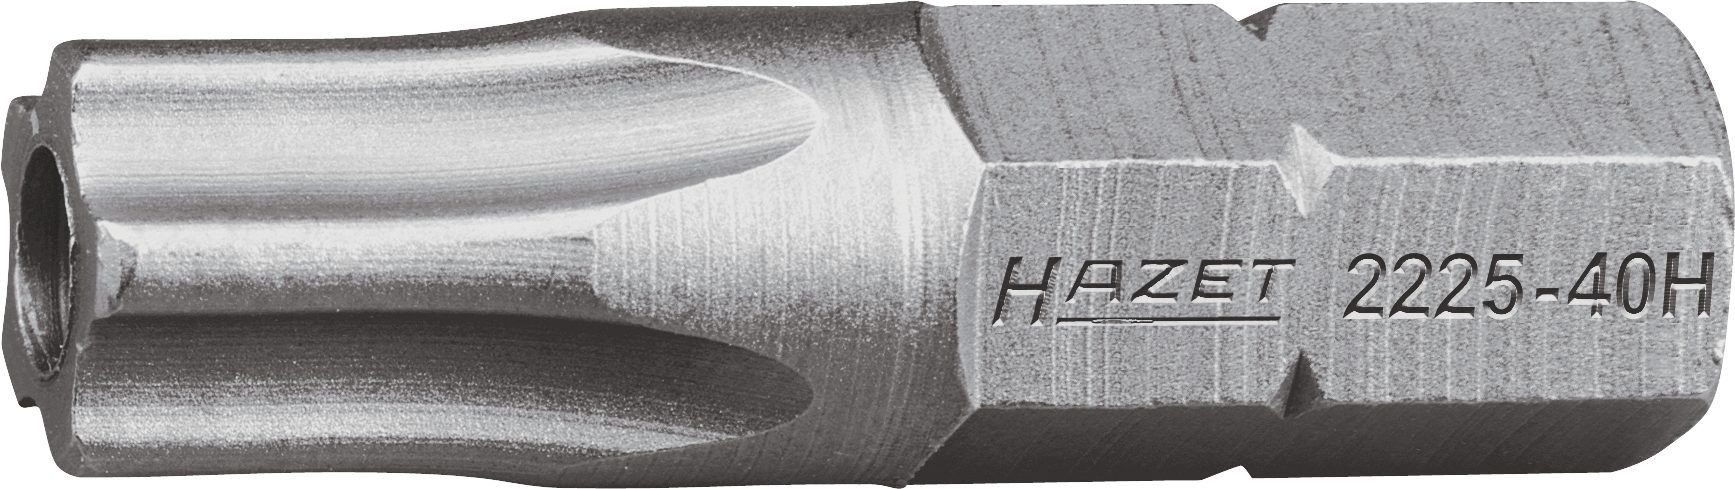 HAZET Bit-Set Hazet 5-Stern-Schraubendr.-Einsatz (Bit), 2225-30H